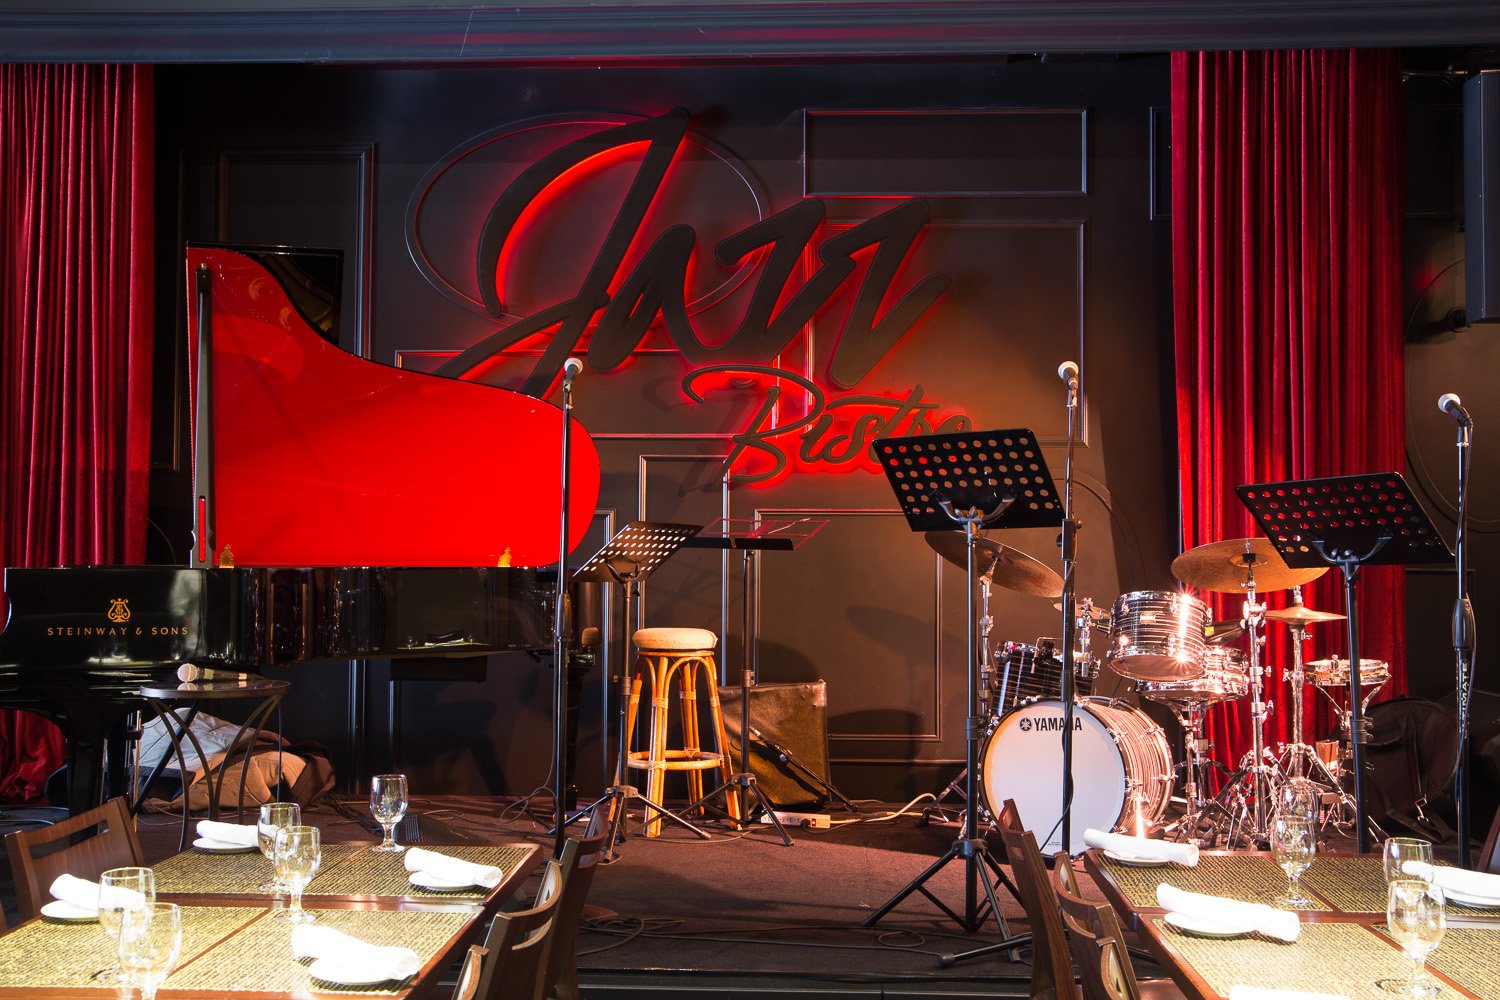 Джаз клуб концерт. Джаз кафе Америка. Ресторан в стиле джаз. Джаз сцена. Сцена в джазовом баре.